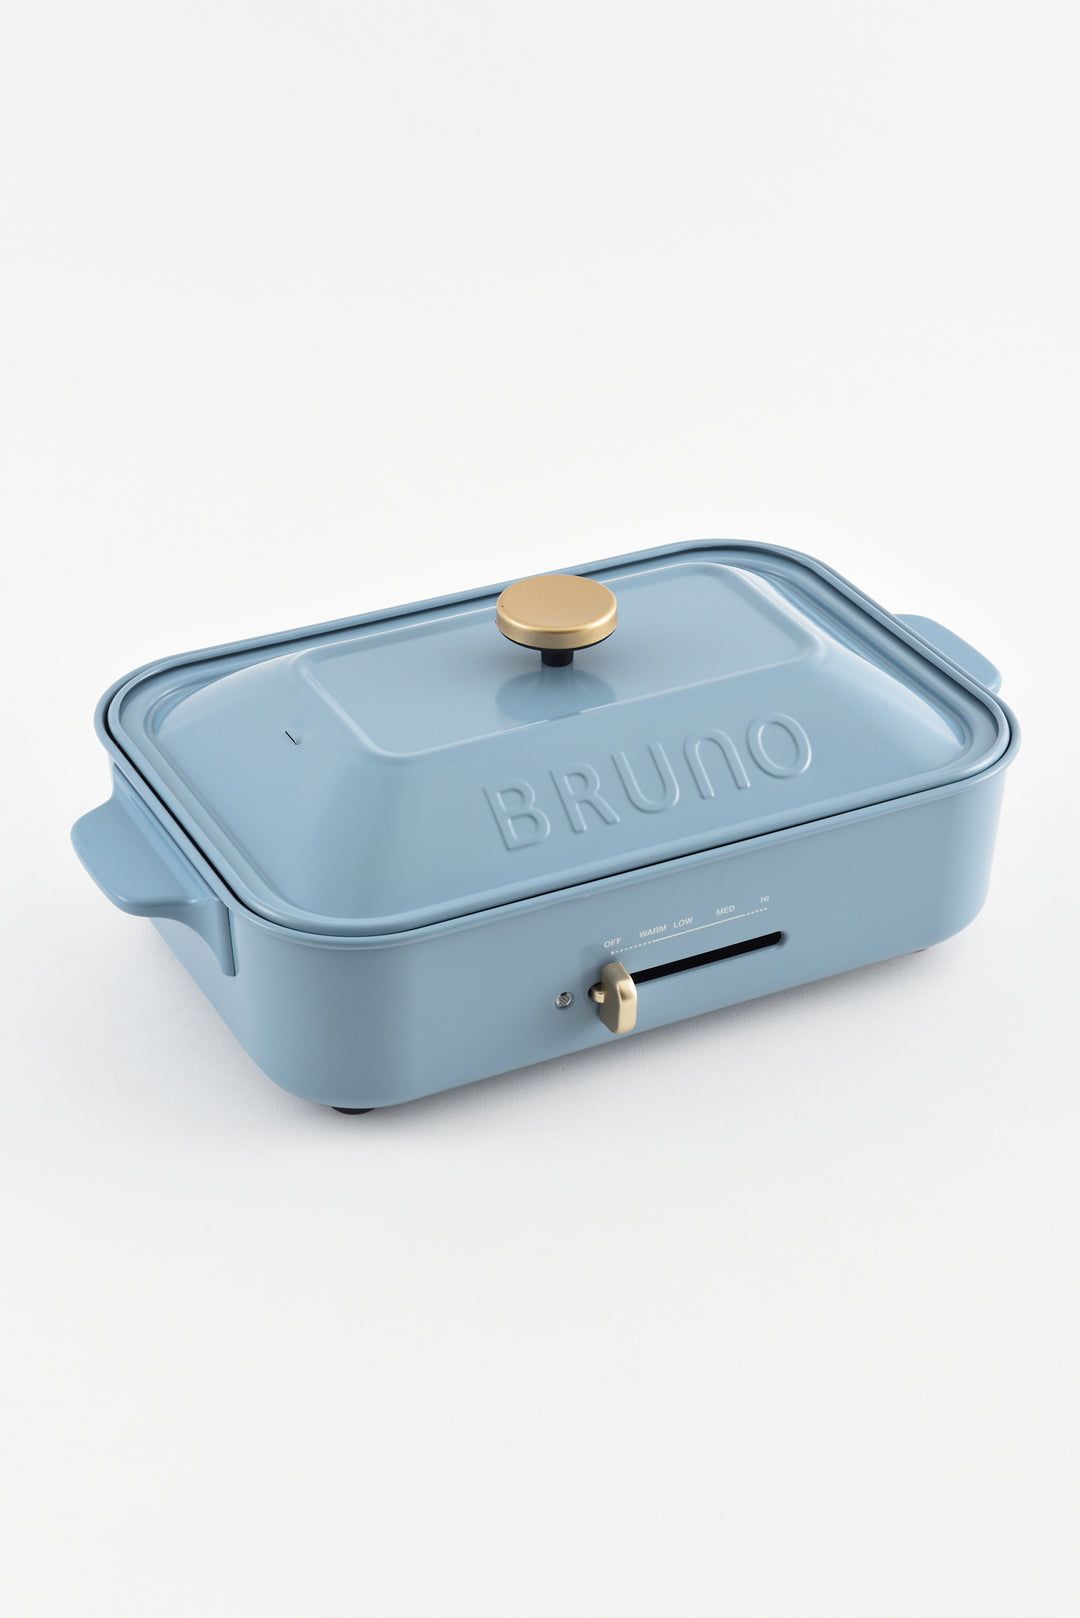 BRUNO 多功能電熱鍋 - 藍色 BOE021-POBL